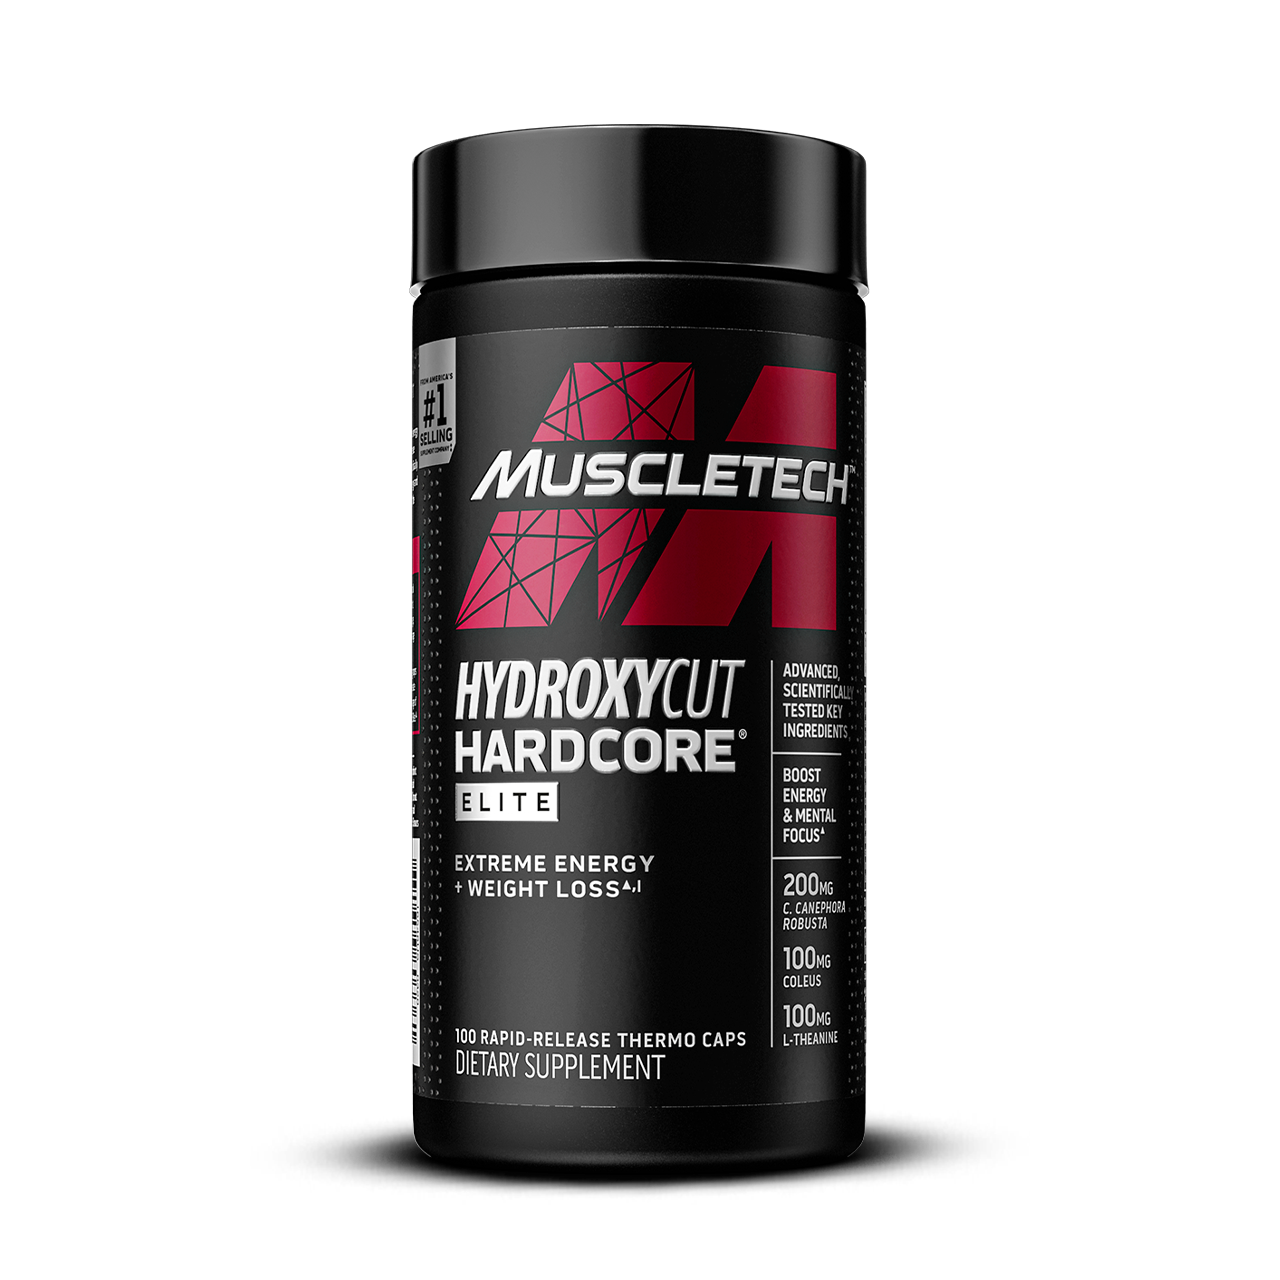 MuscleTech HydroxyCut Hardcore Elite Bottle